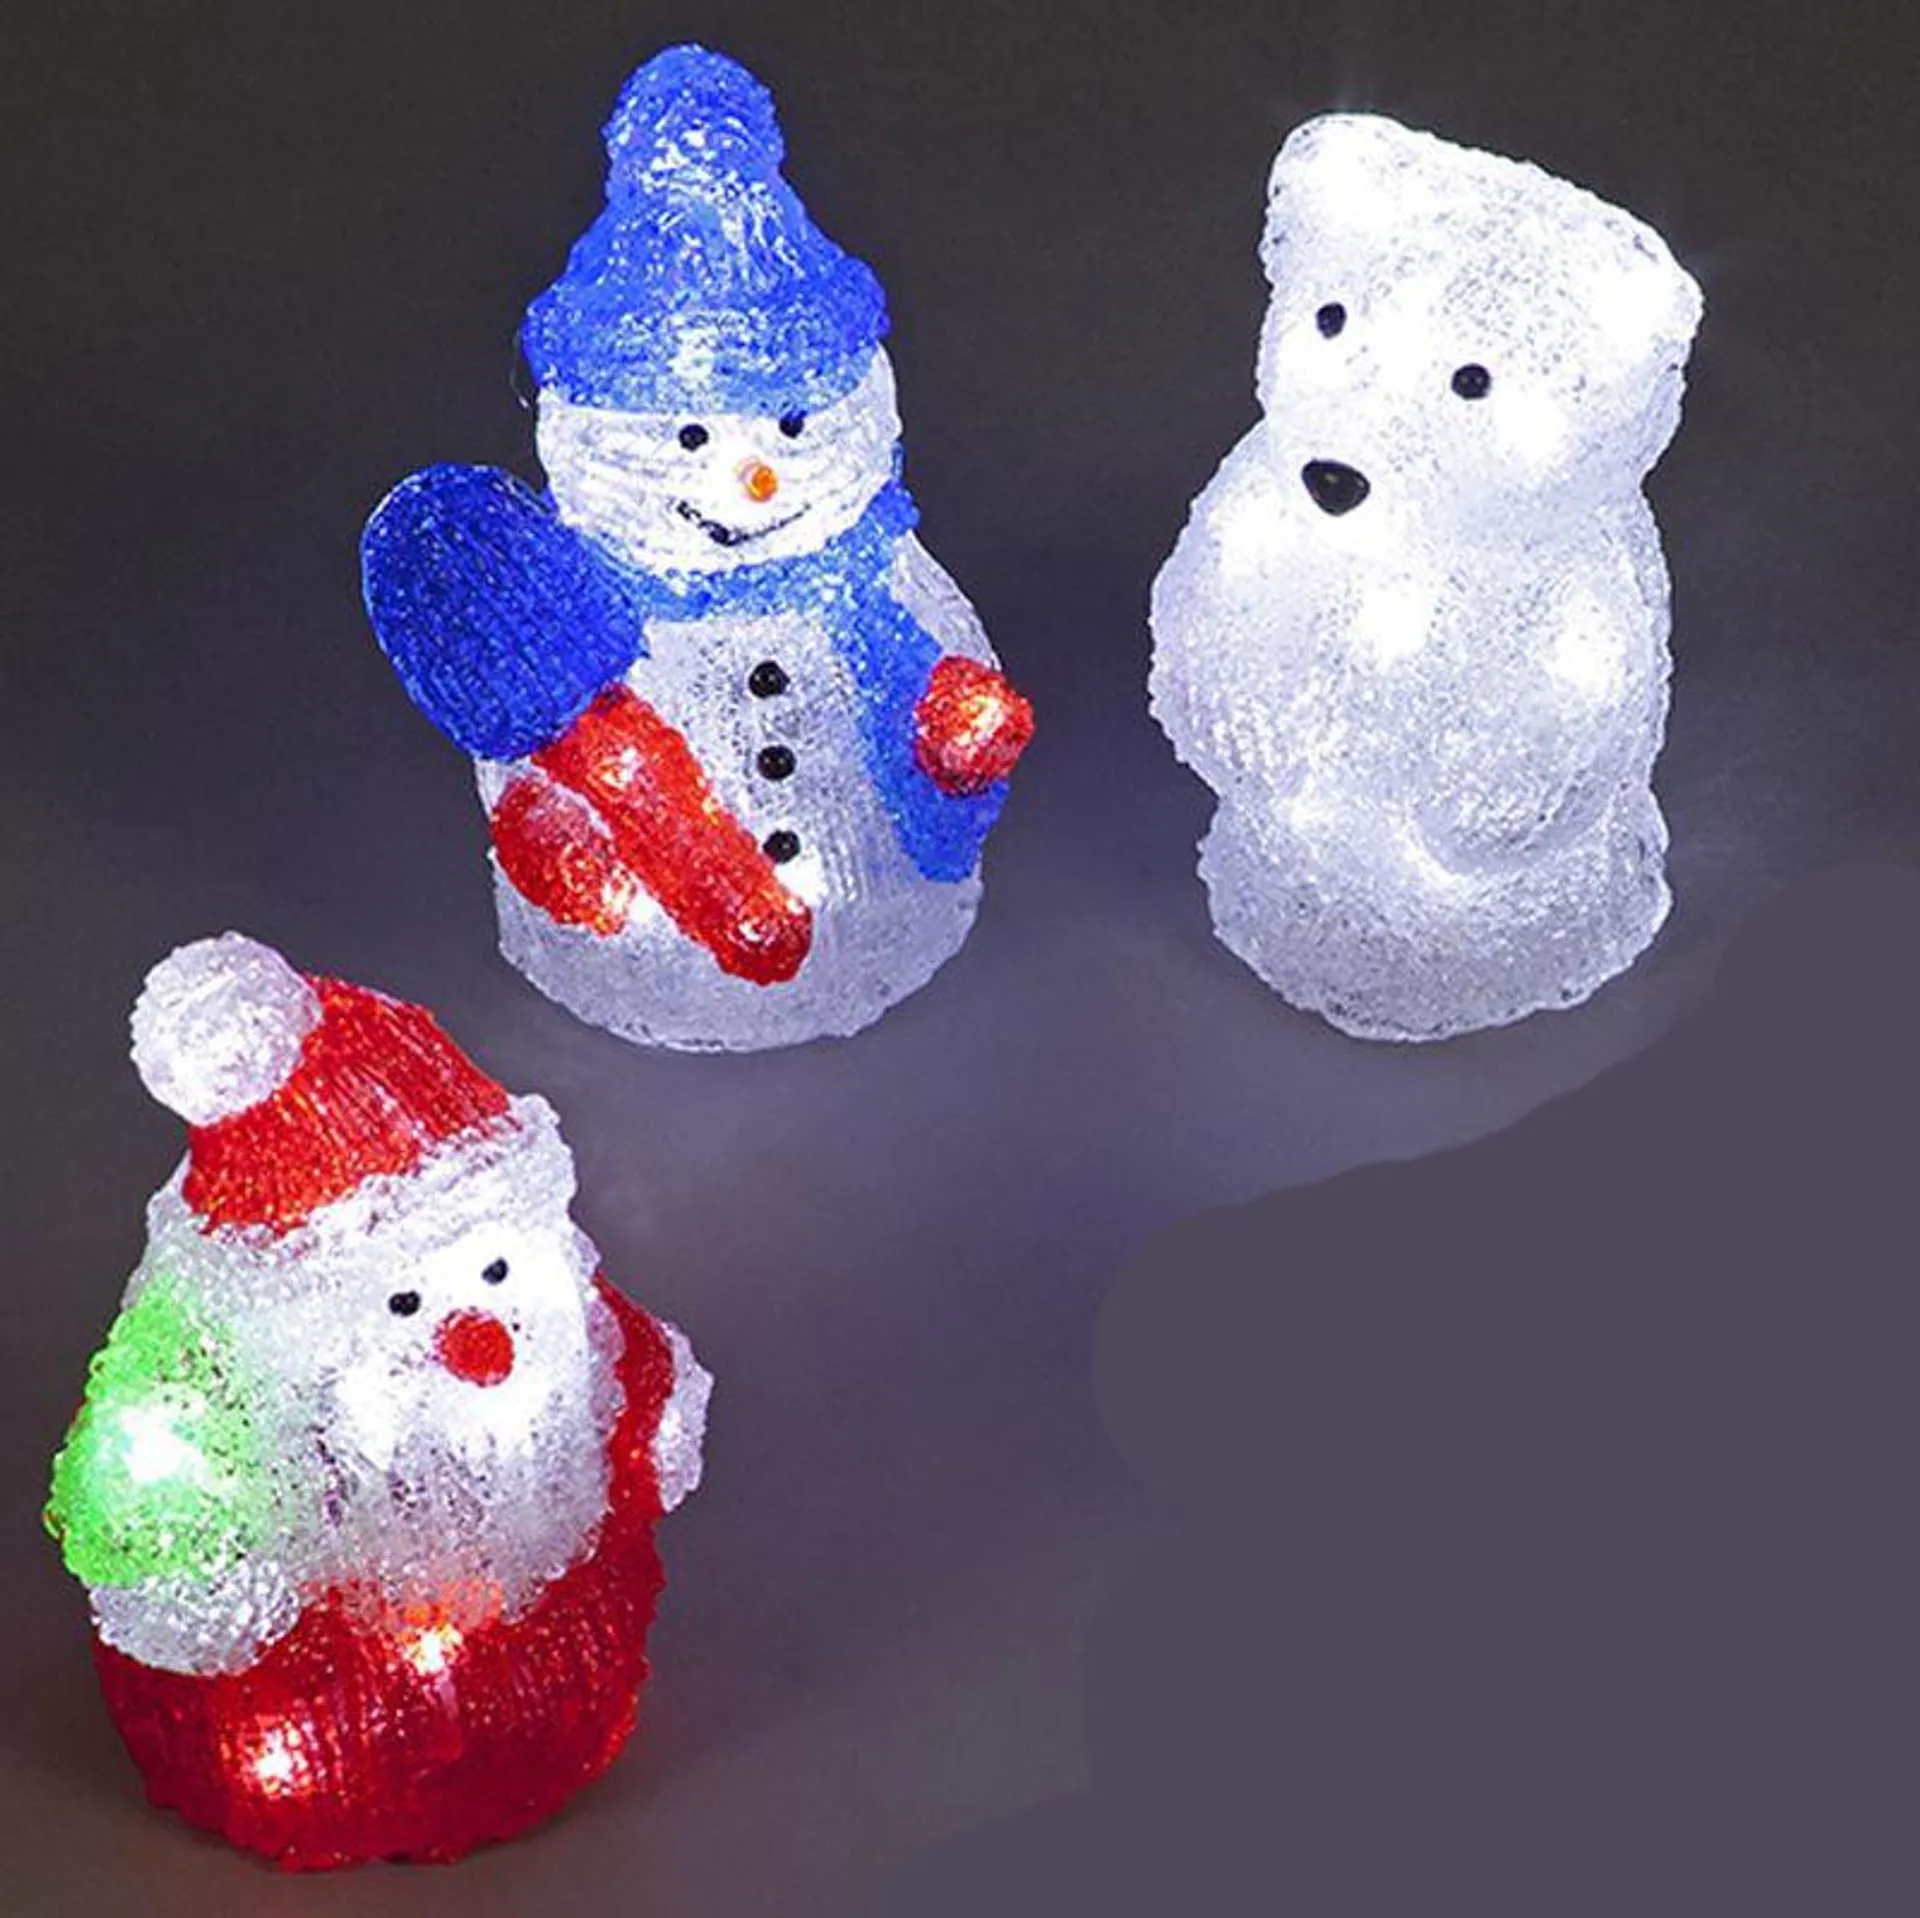 Set of 3 17cm Christmas acrylic figures - Santa, Snowman, Polar bear with LEDs